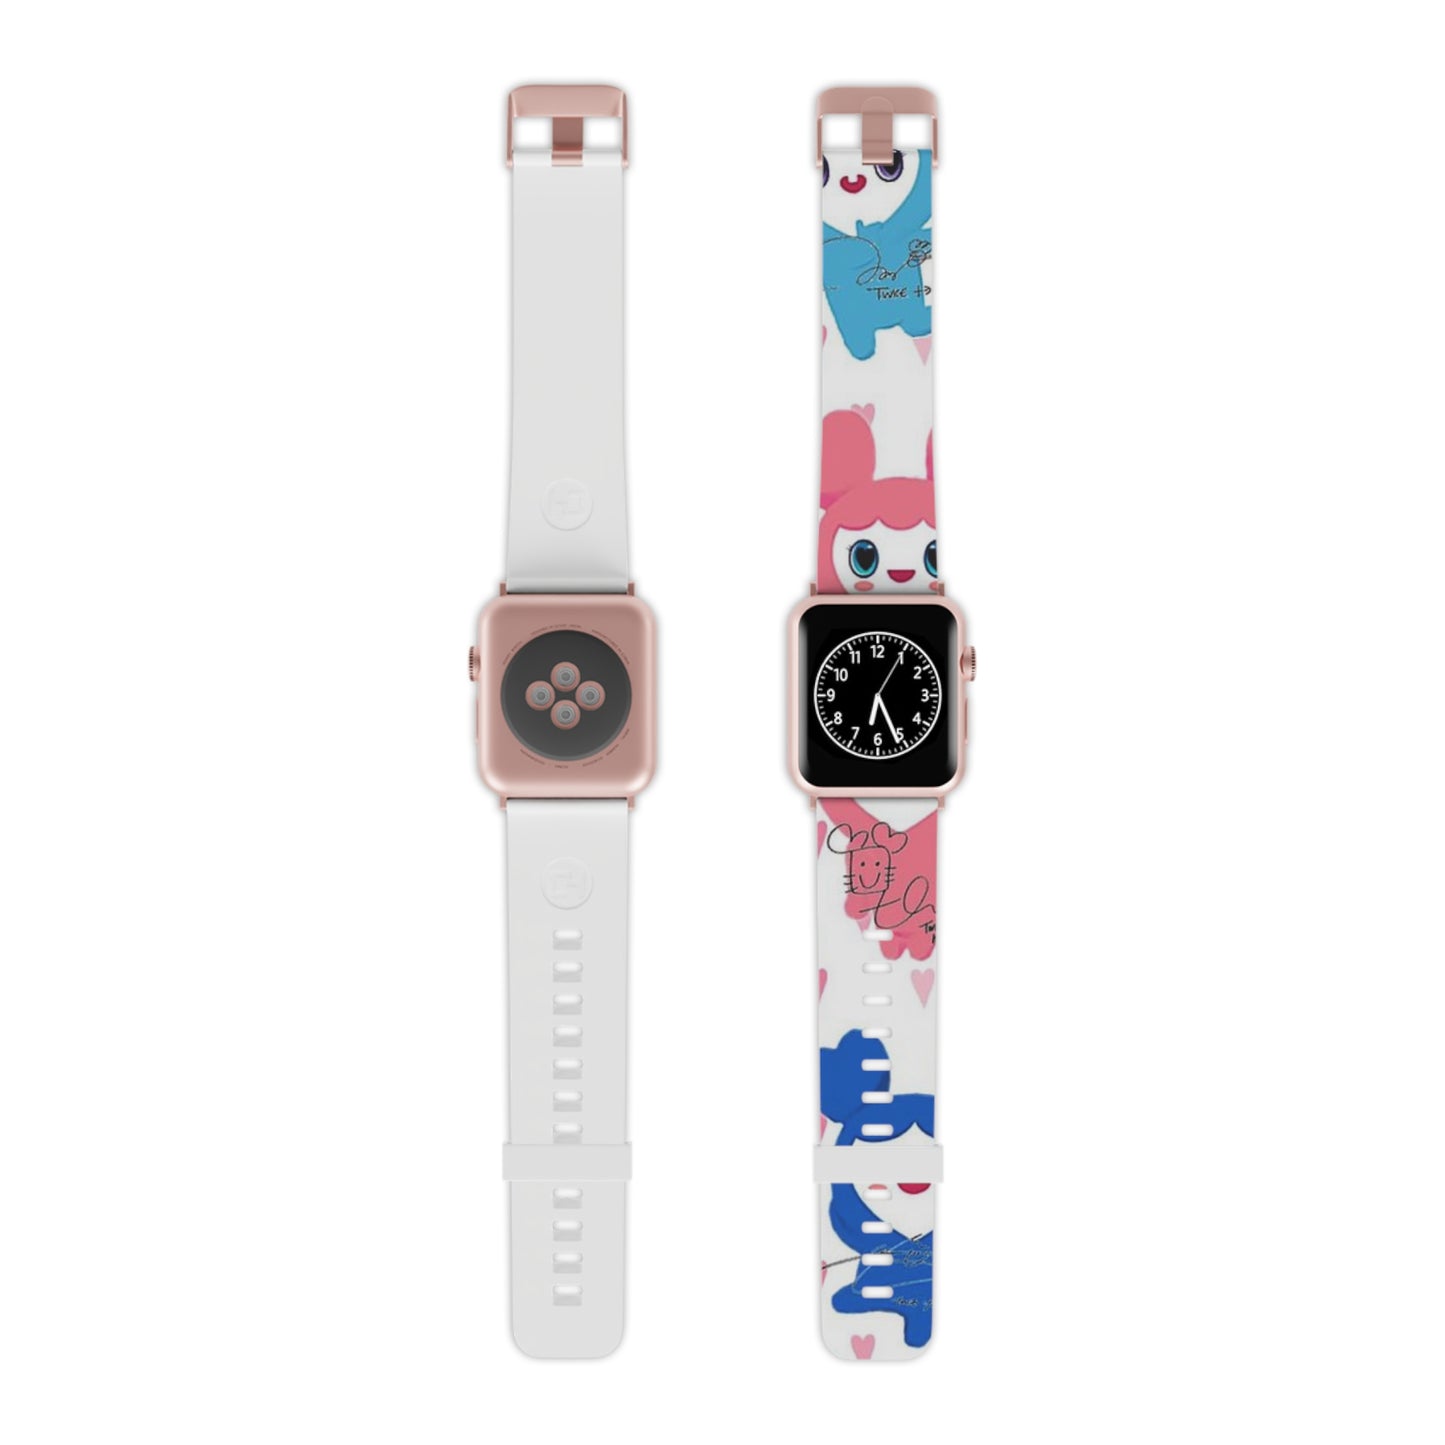 Kpop Girlband Twice Custom Watch Band for Apple Watch